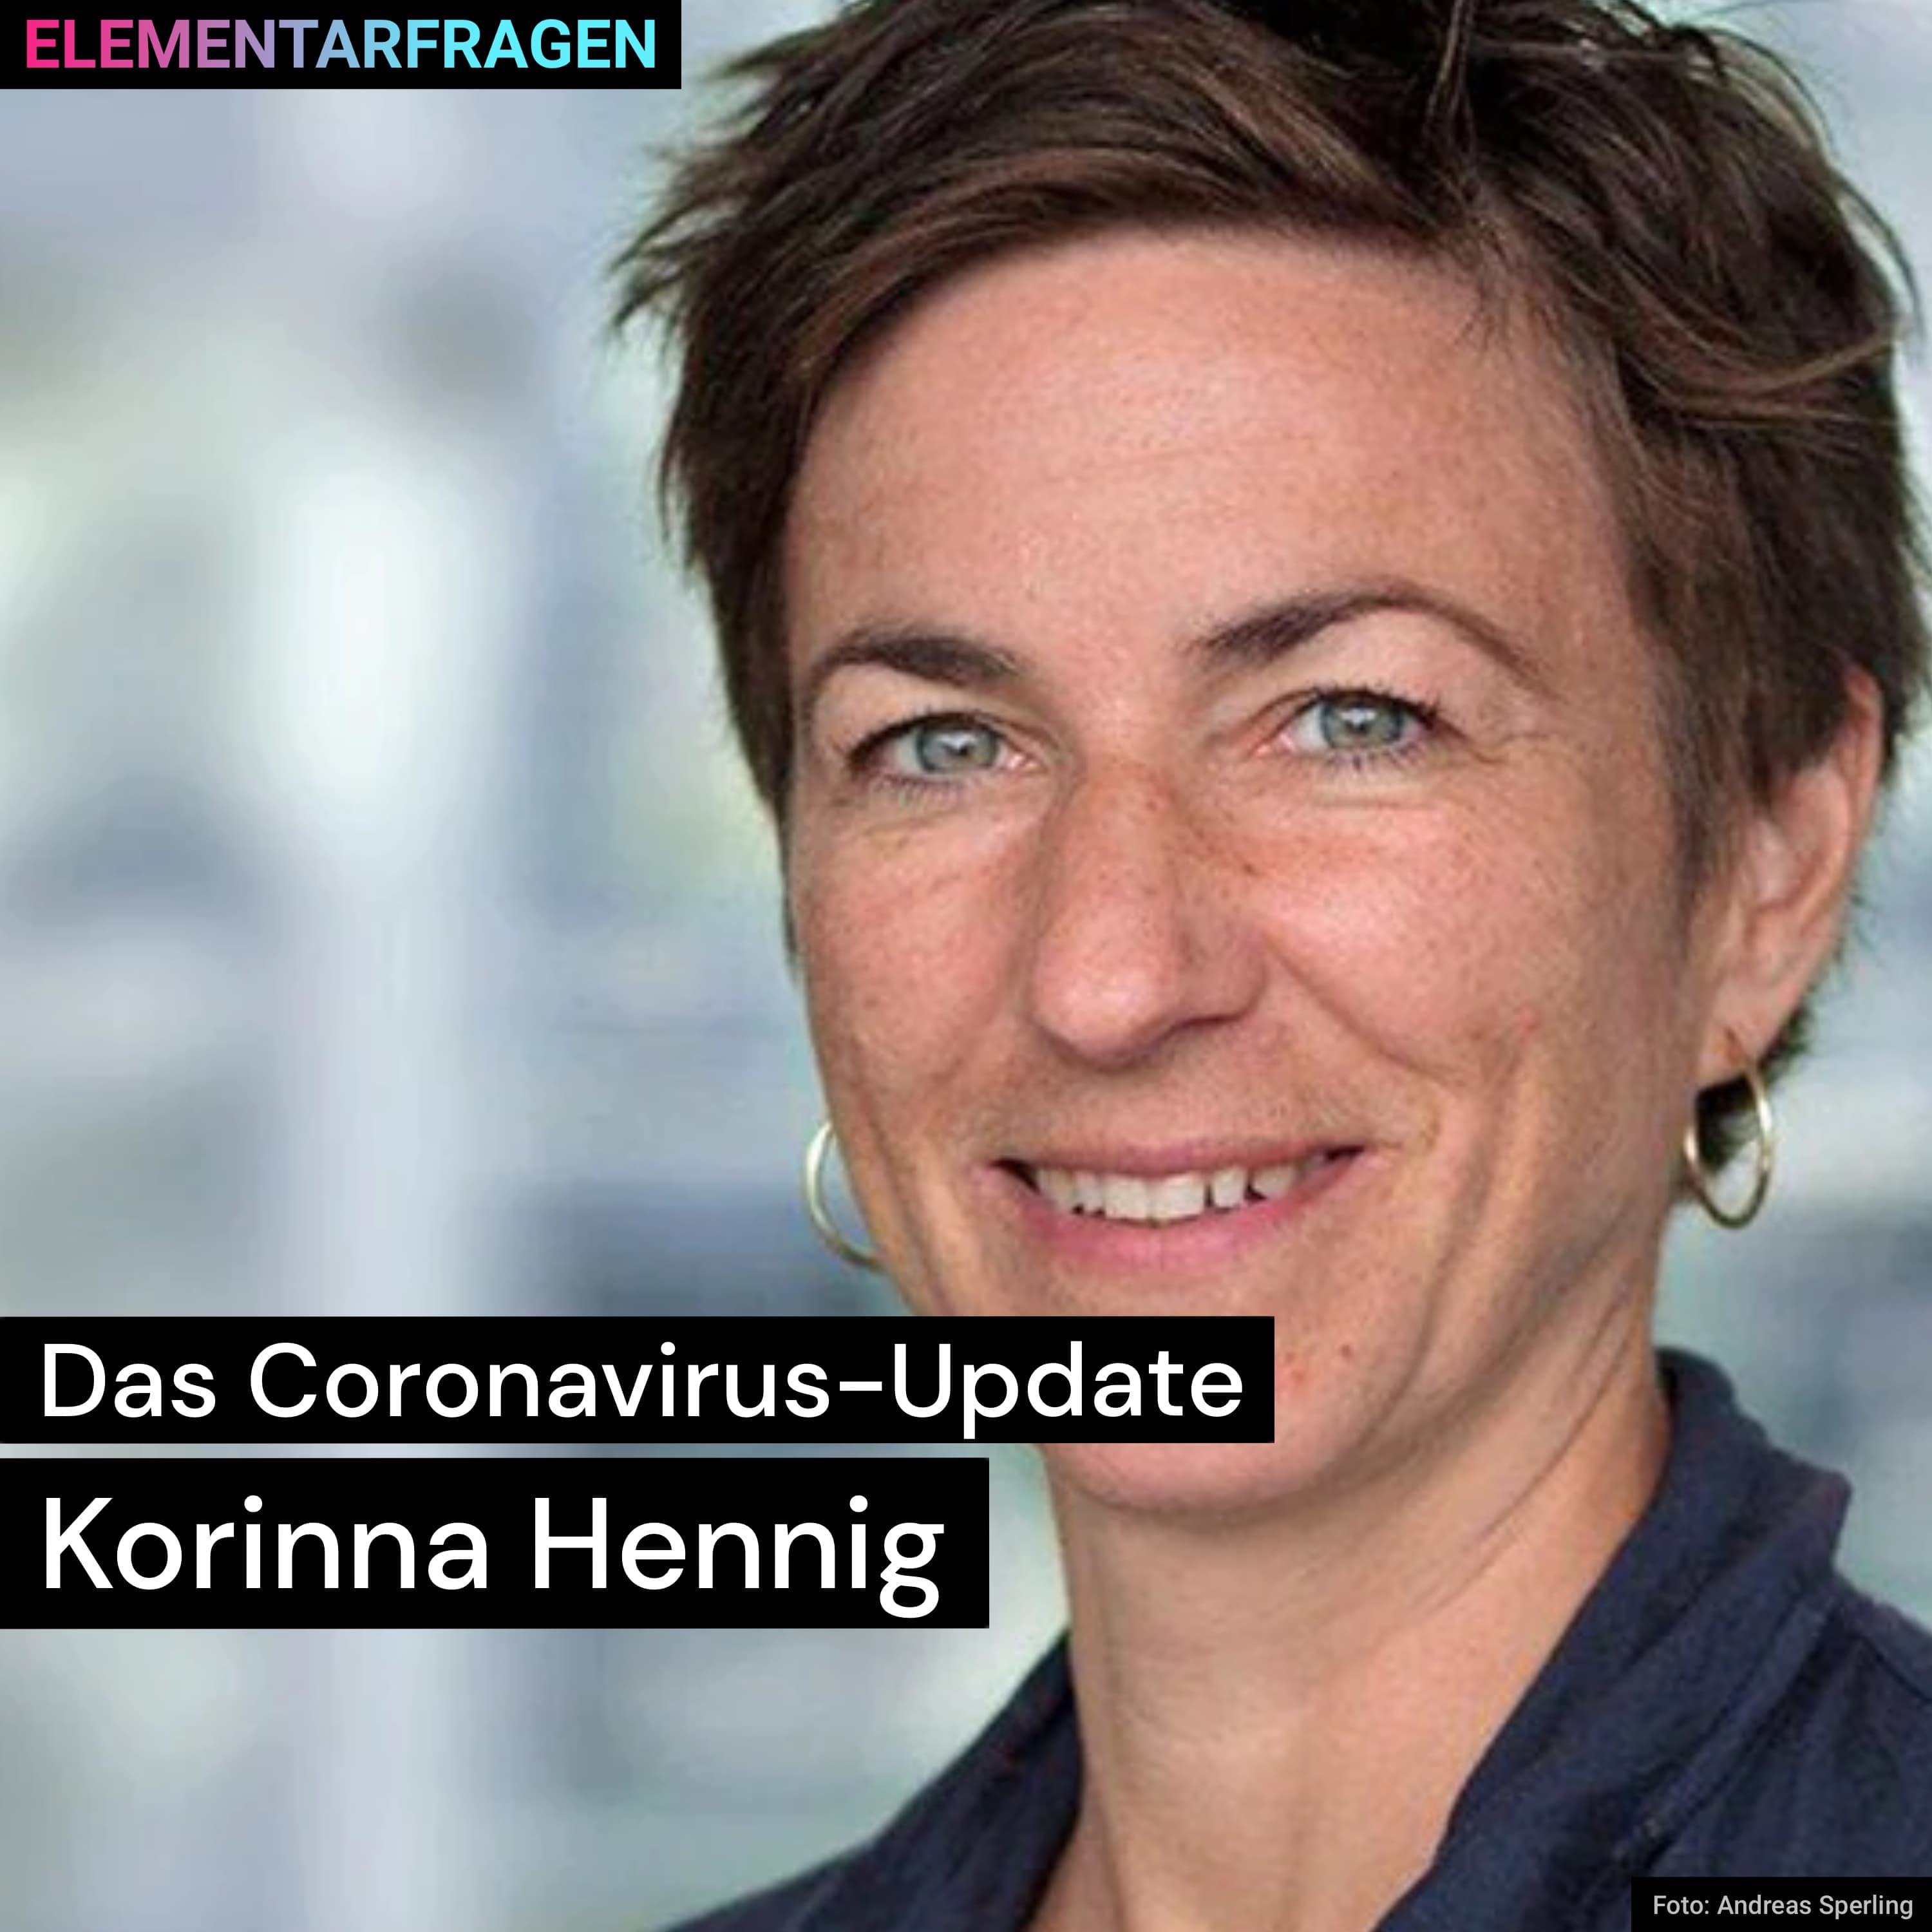 Das Coronavirus-Update: Korinna Hennig | Elementarfragen